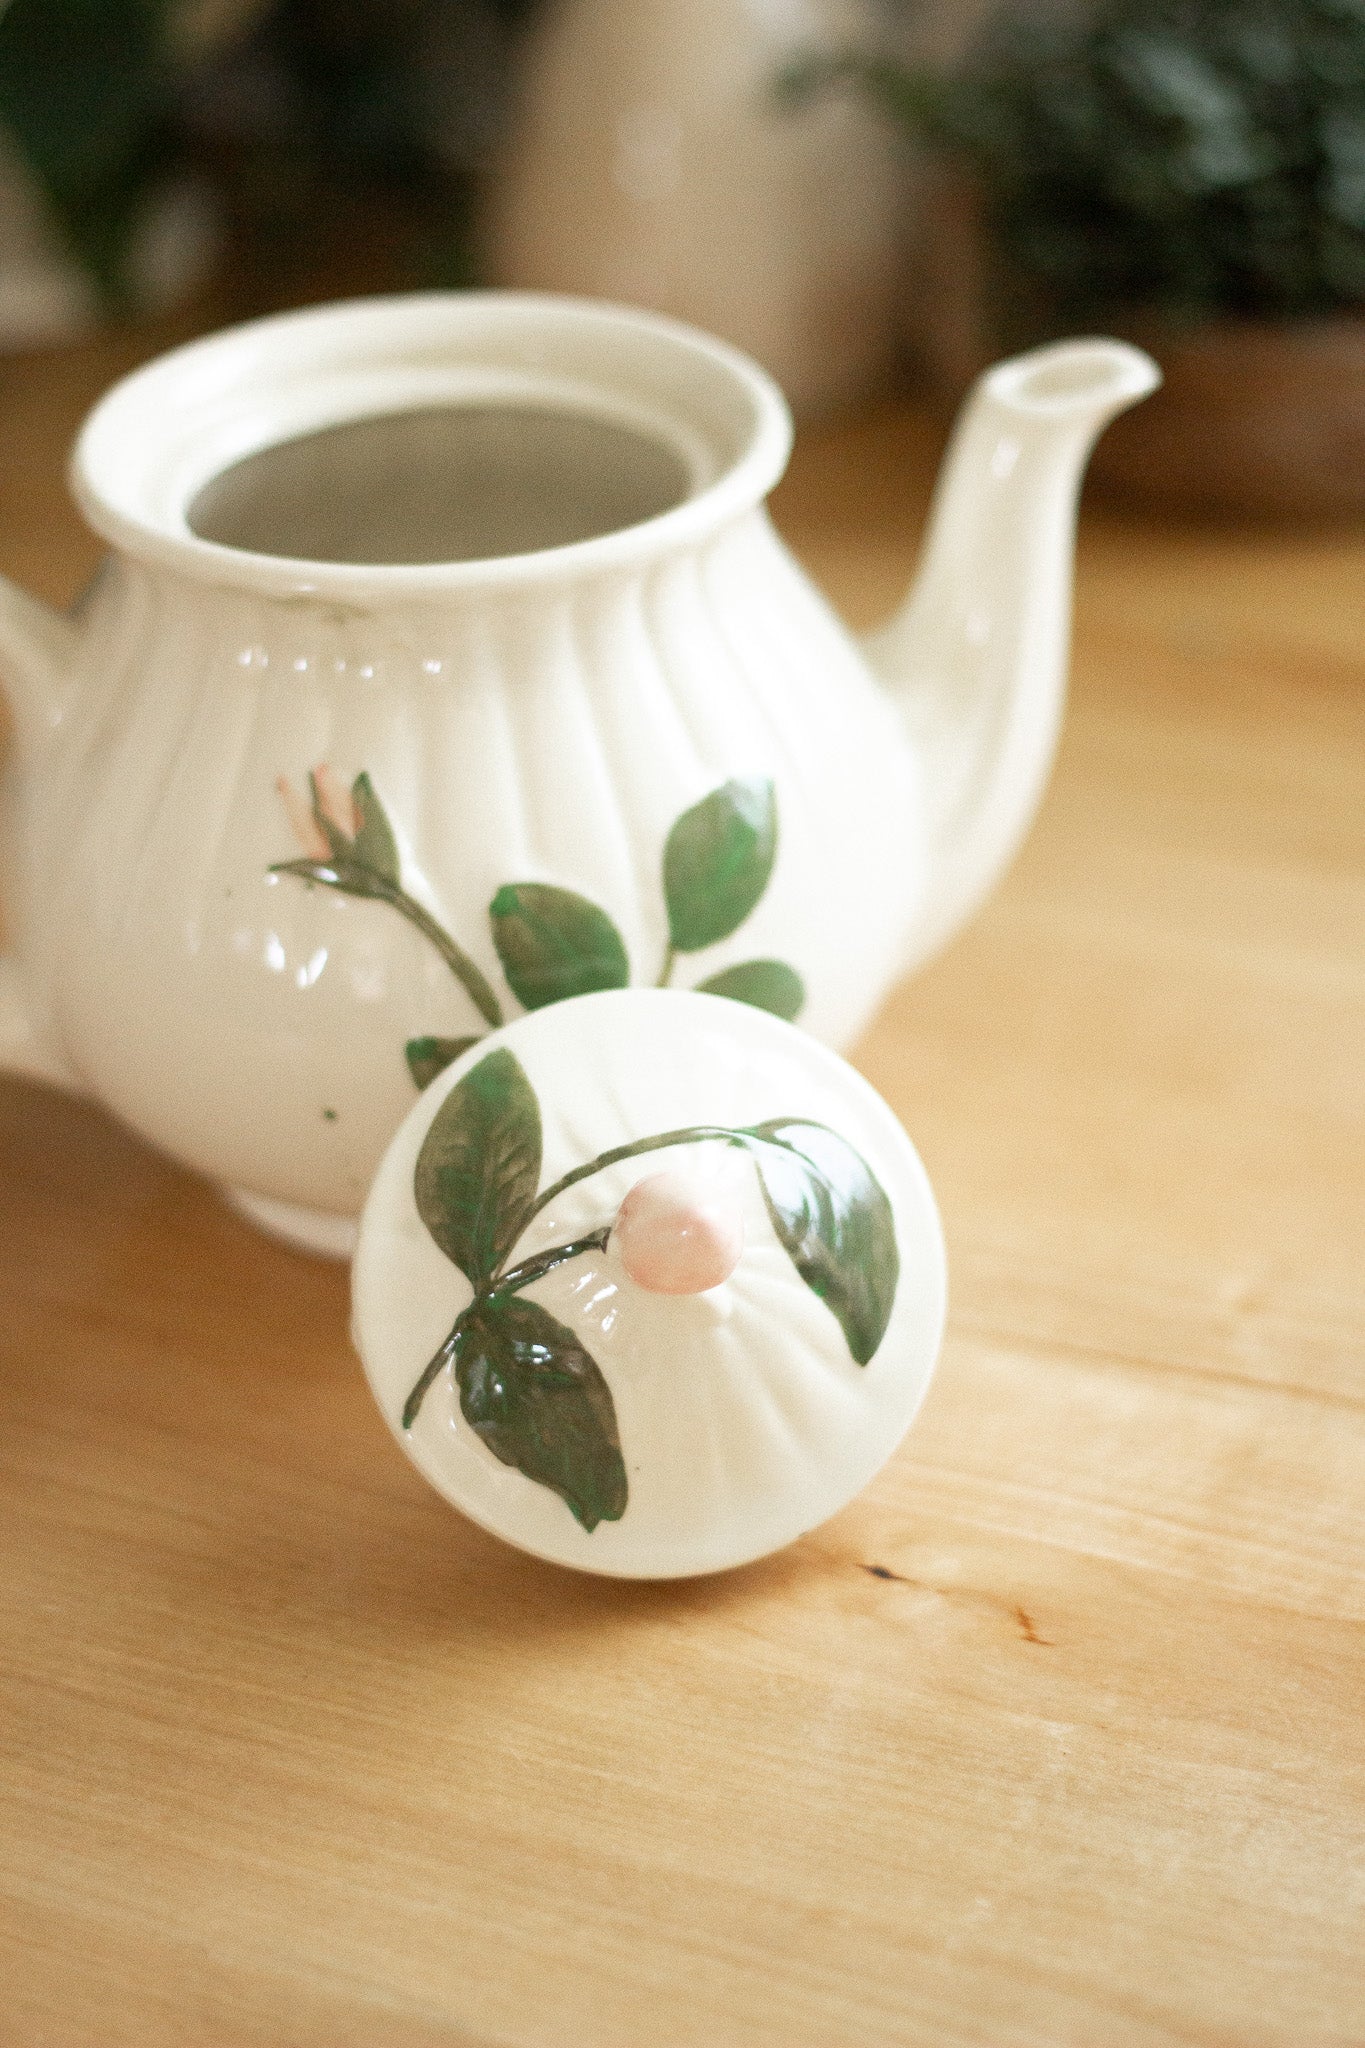 Antique Tea Pot